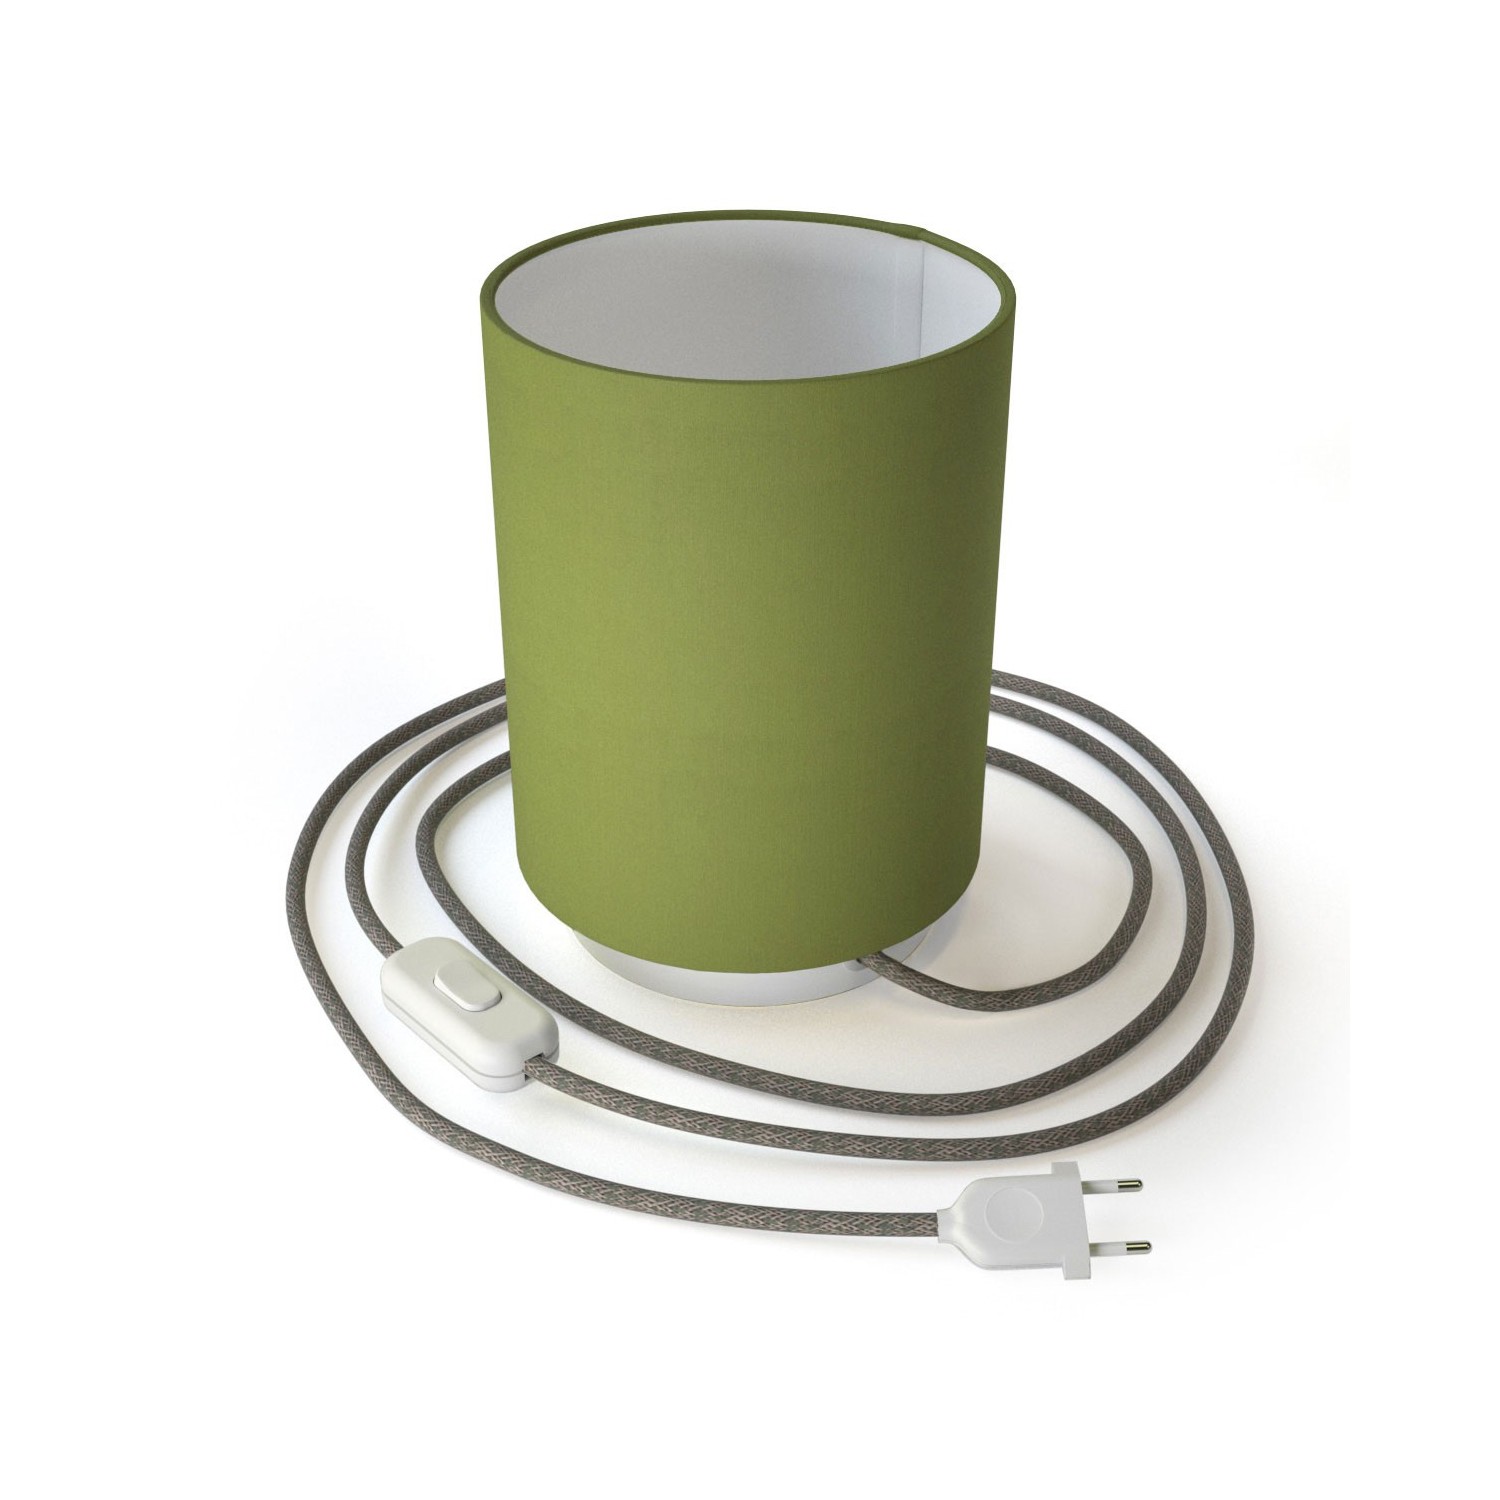 Posaluce in metallo con paralume Cilindro Teletta Verde Oliva, completo di cavo tessile, interruttore e spina 2 poli